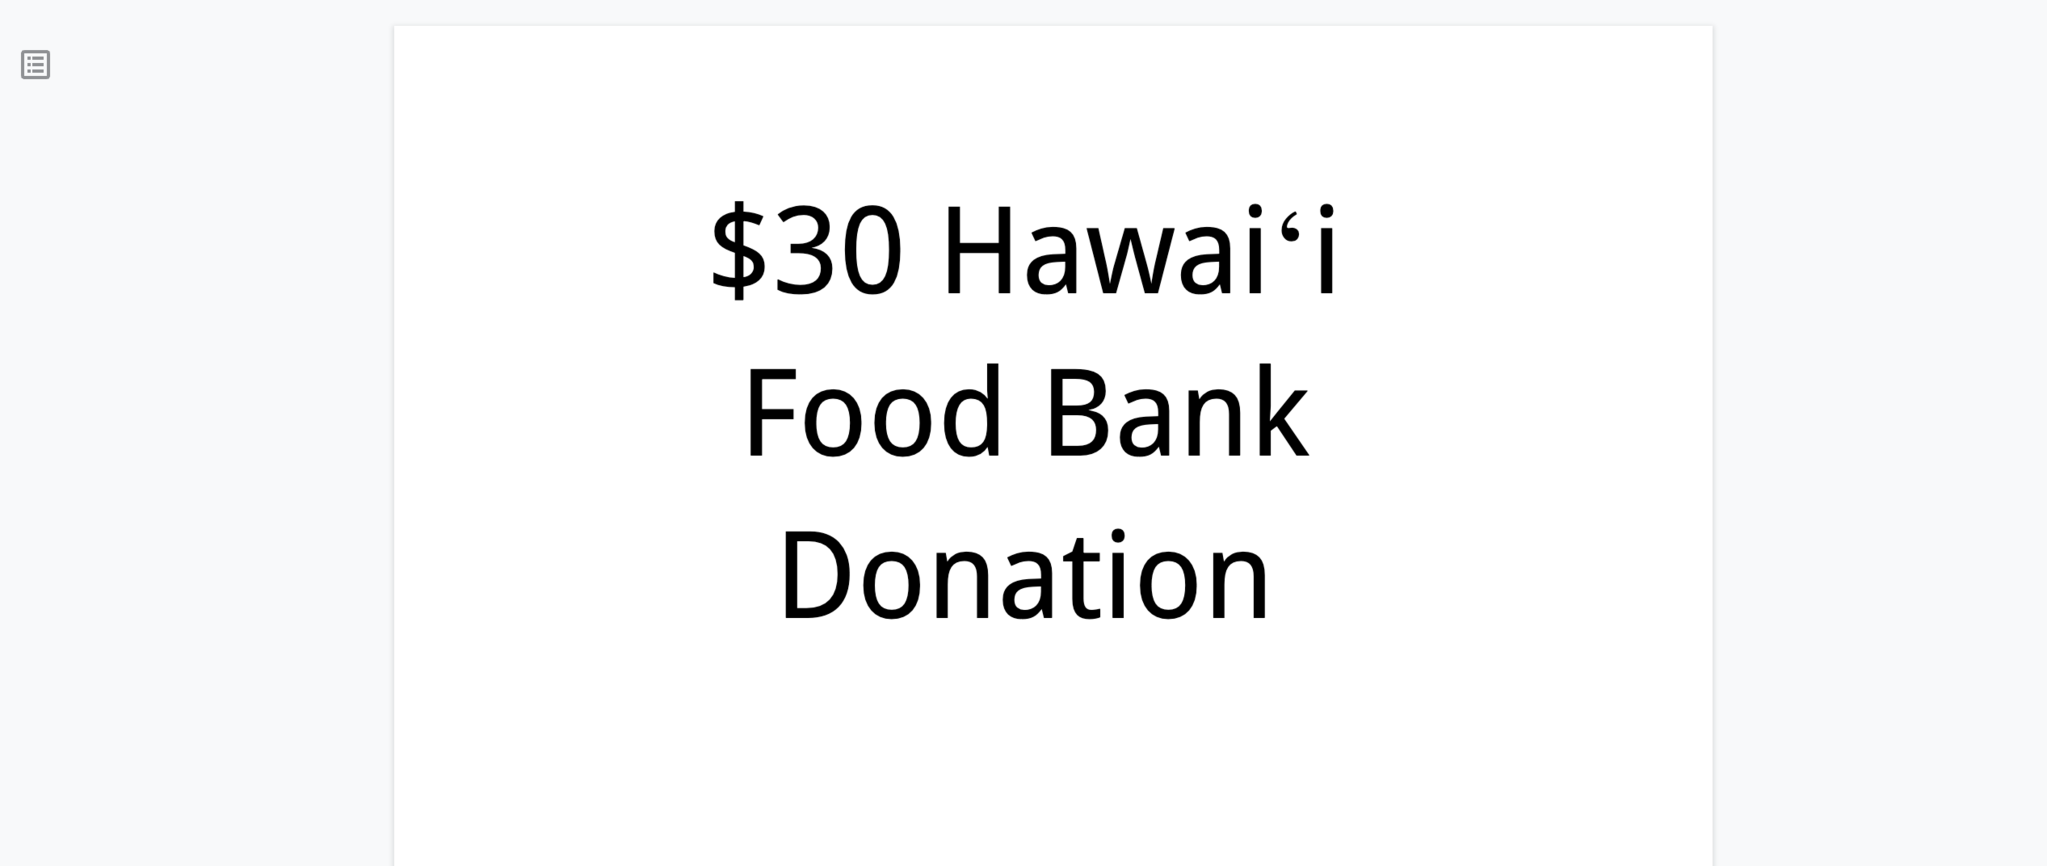 Hawaii Food Bank $30 Donation